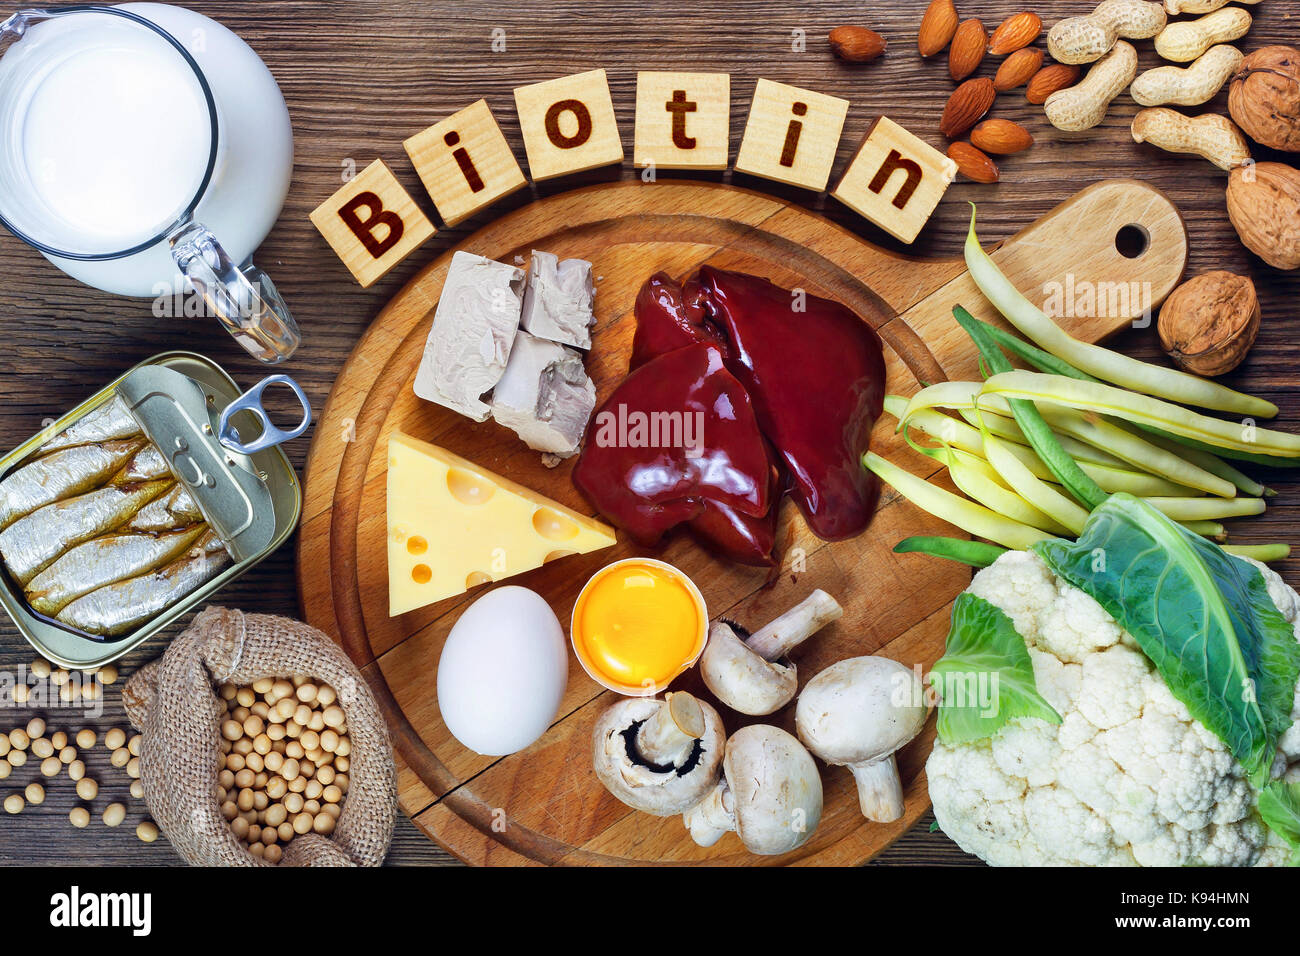 Lebensmittel, die reich an Biotin (Vitamin B7). Lebensmittel wie Leber, Eigelb, Hefe, Käse, Sardinen, Soja, Milch, Blumenkohl, grüne Bohnen, Pilze, Erdnüsse, w Stockfoto